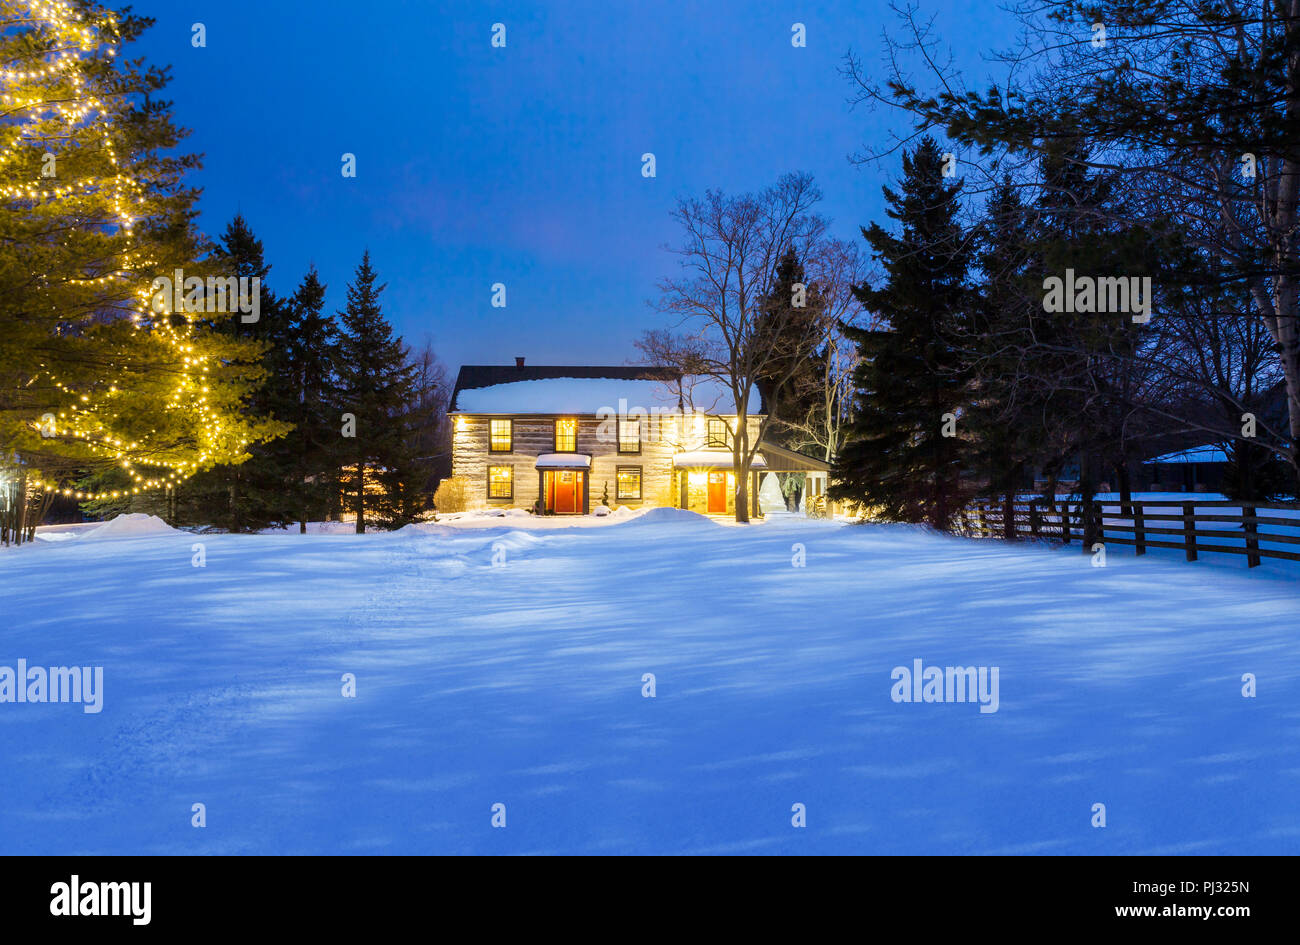 Casa log in una notte d'inverno con le luci accese Foto Stock